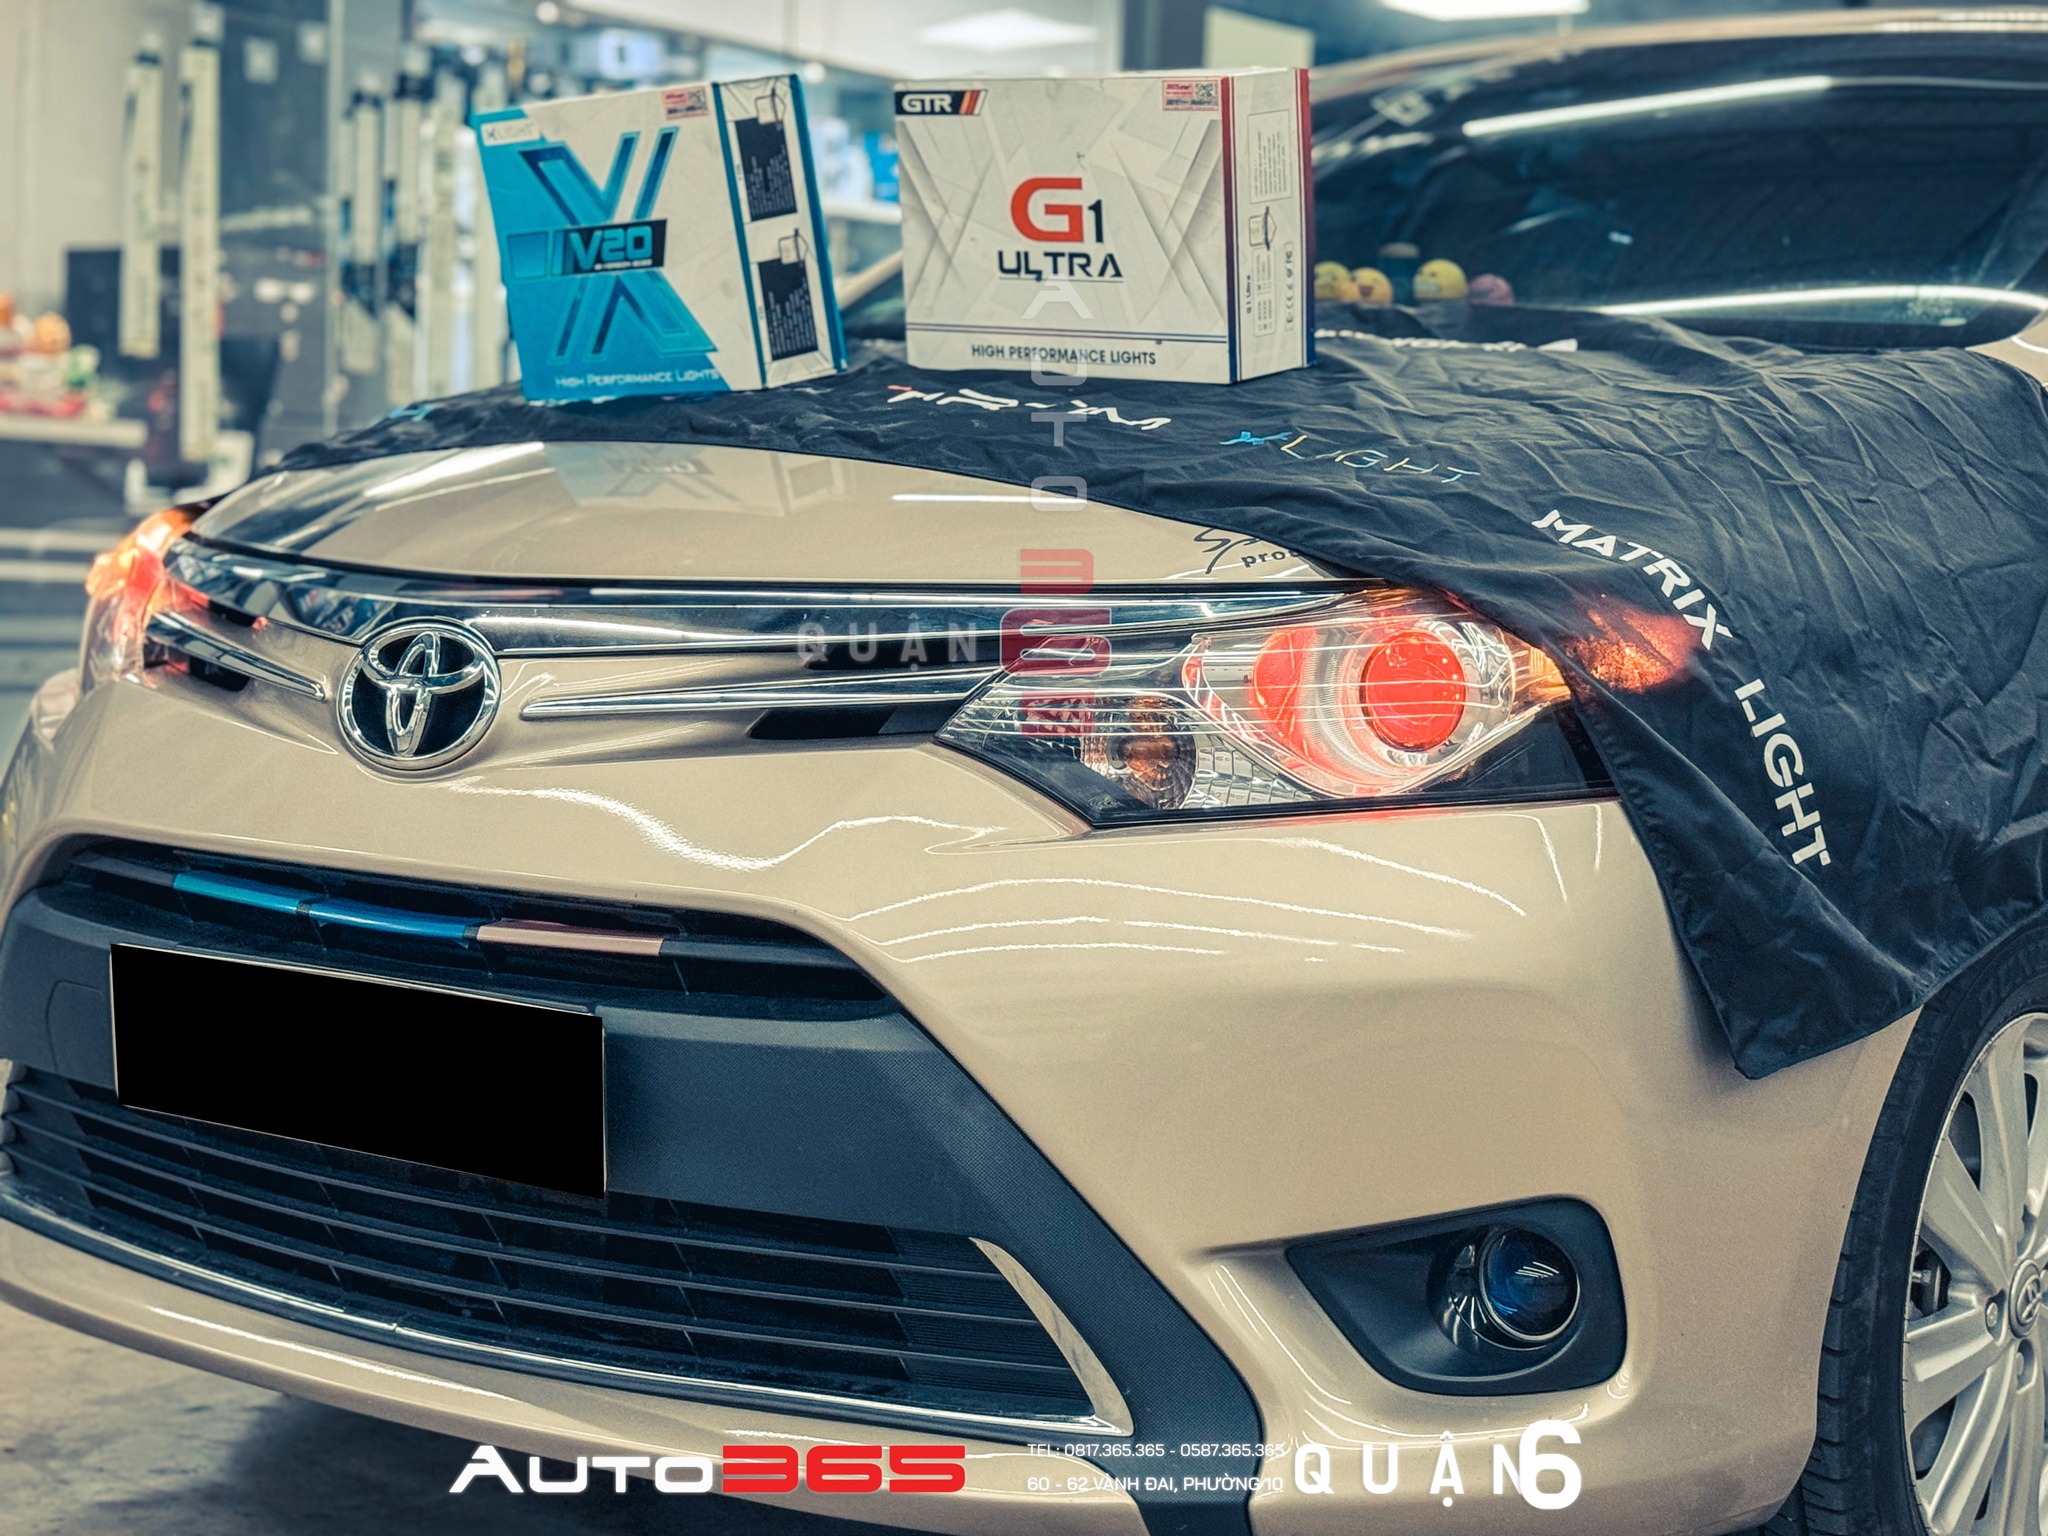 Lắp Bi Gầm GTR G1 Ultra tăng sáng cho Toyota Vios